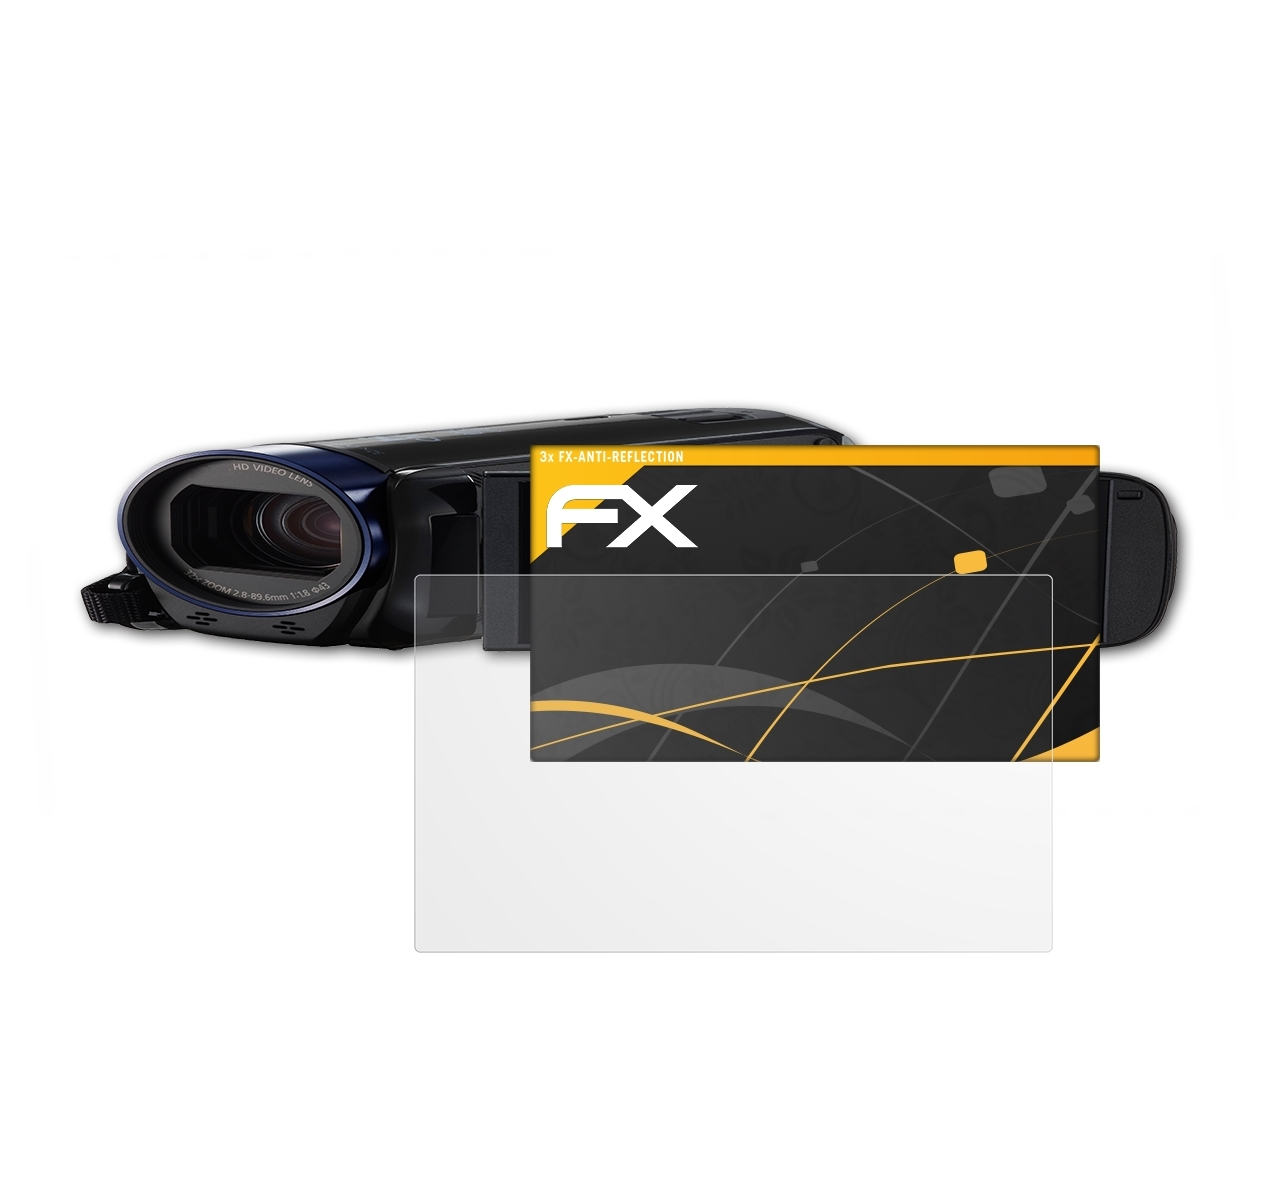 ATFOLIX 3x FX-Antireflex Displayschutz(für Canon R606) Legria HF